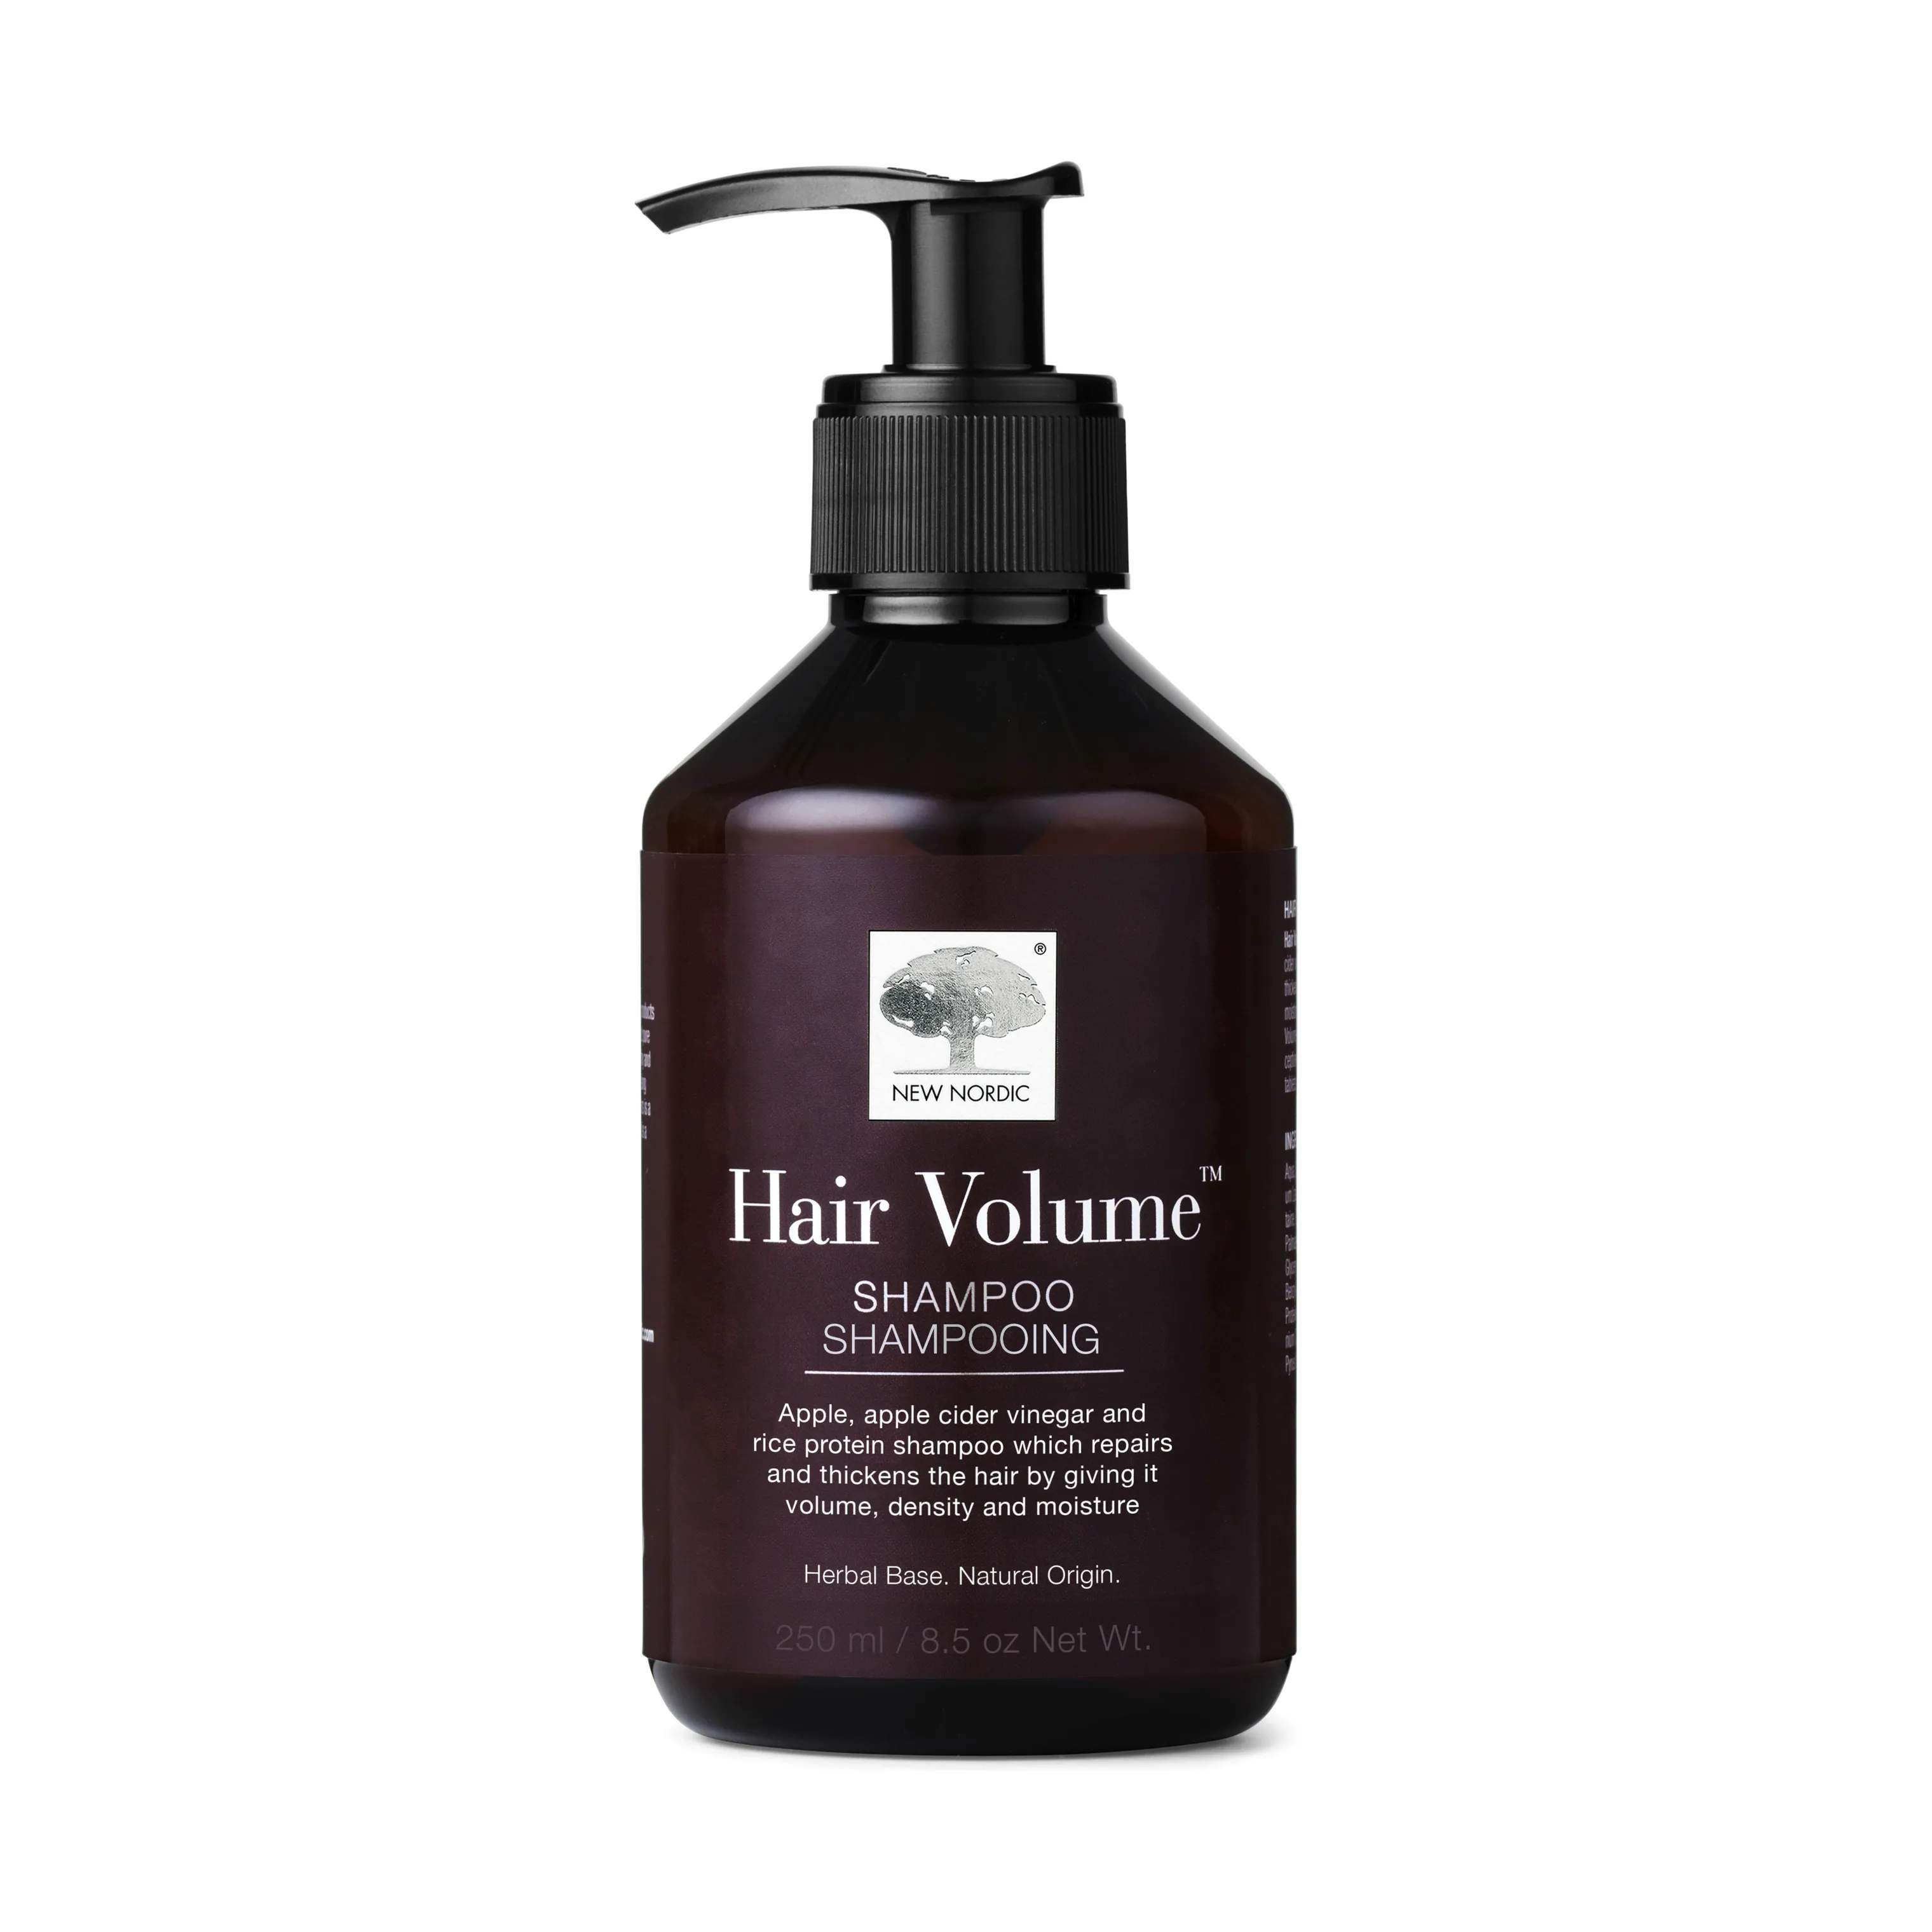 Hair Volume Shampoo, klar, large